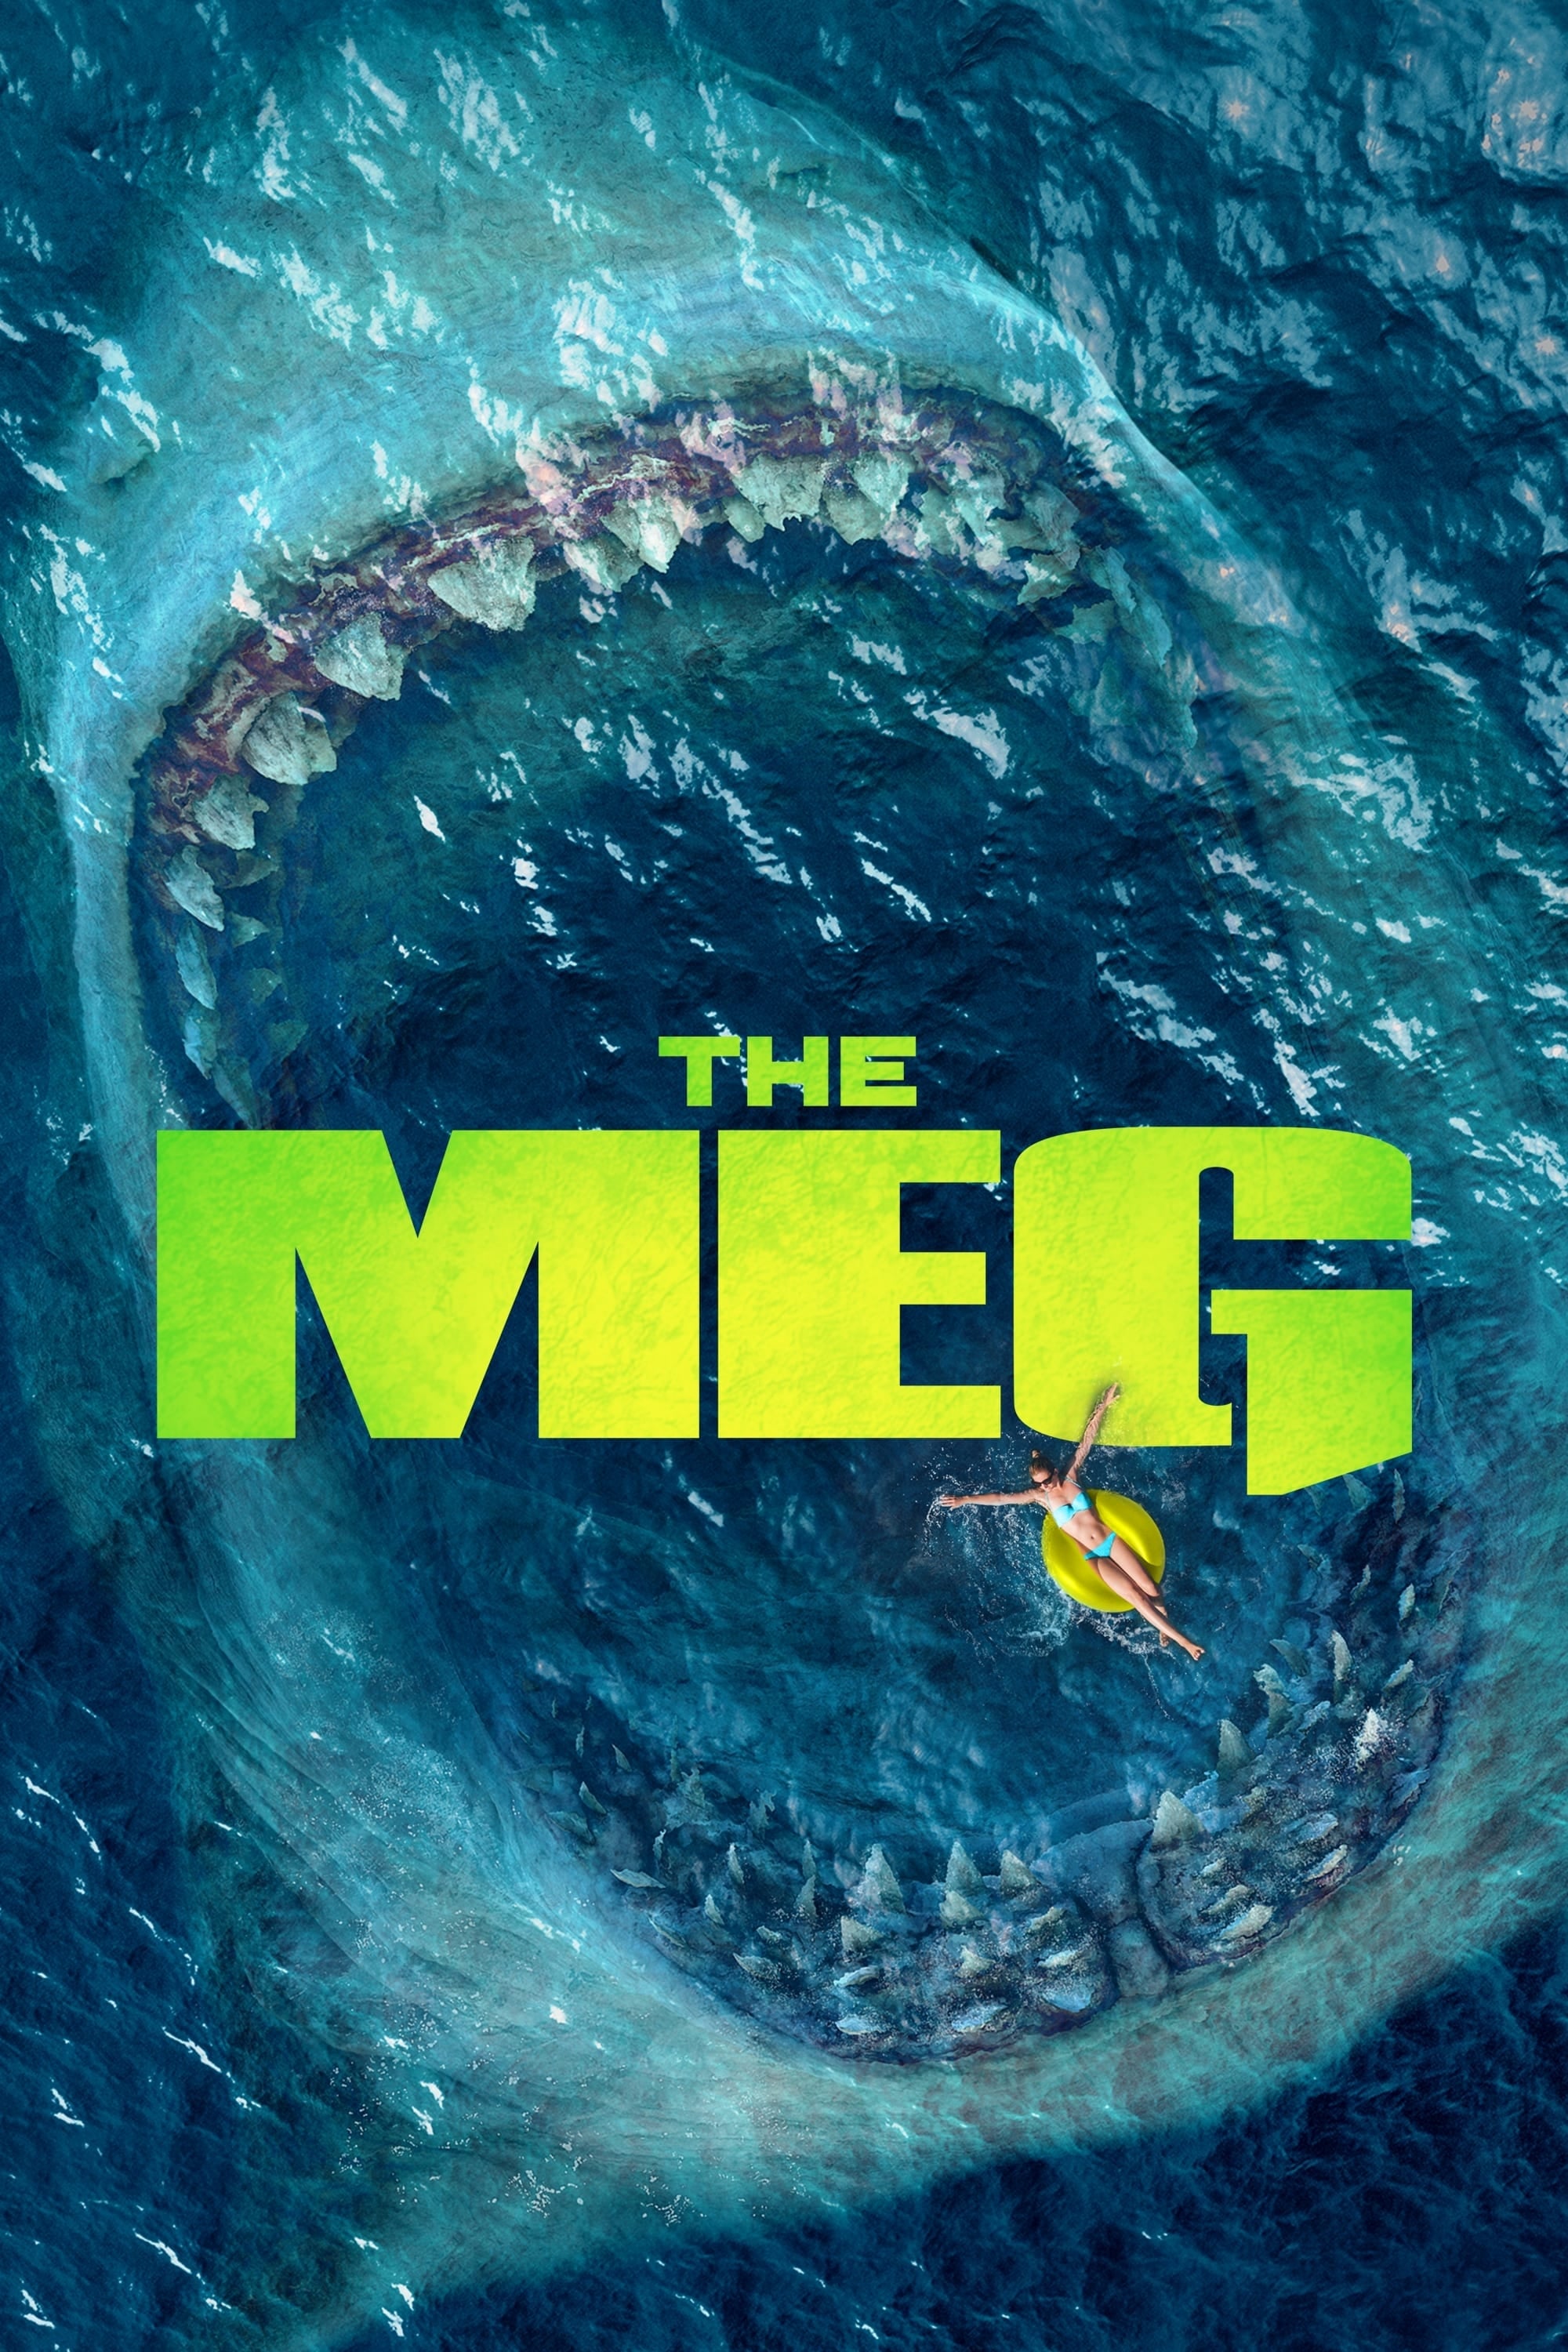 Megalodón (2018)